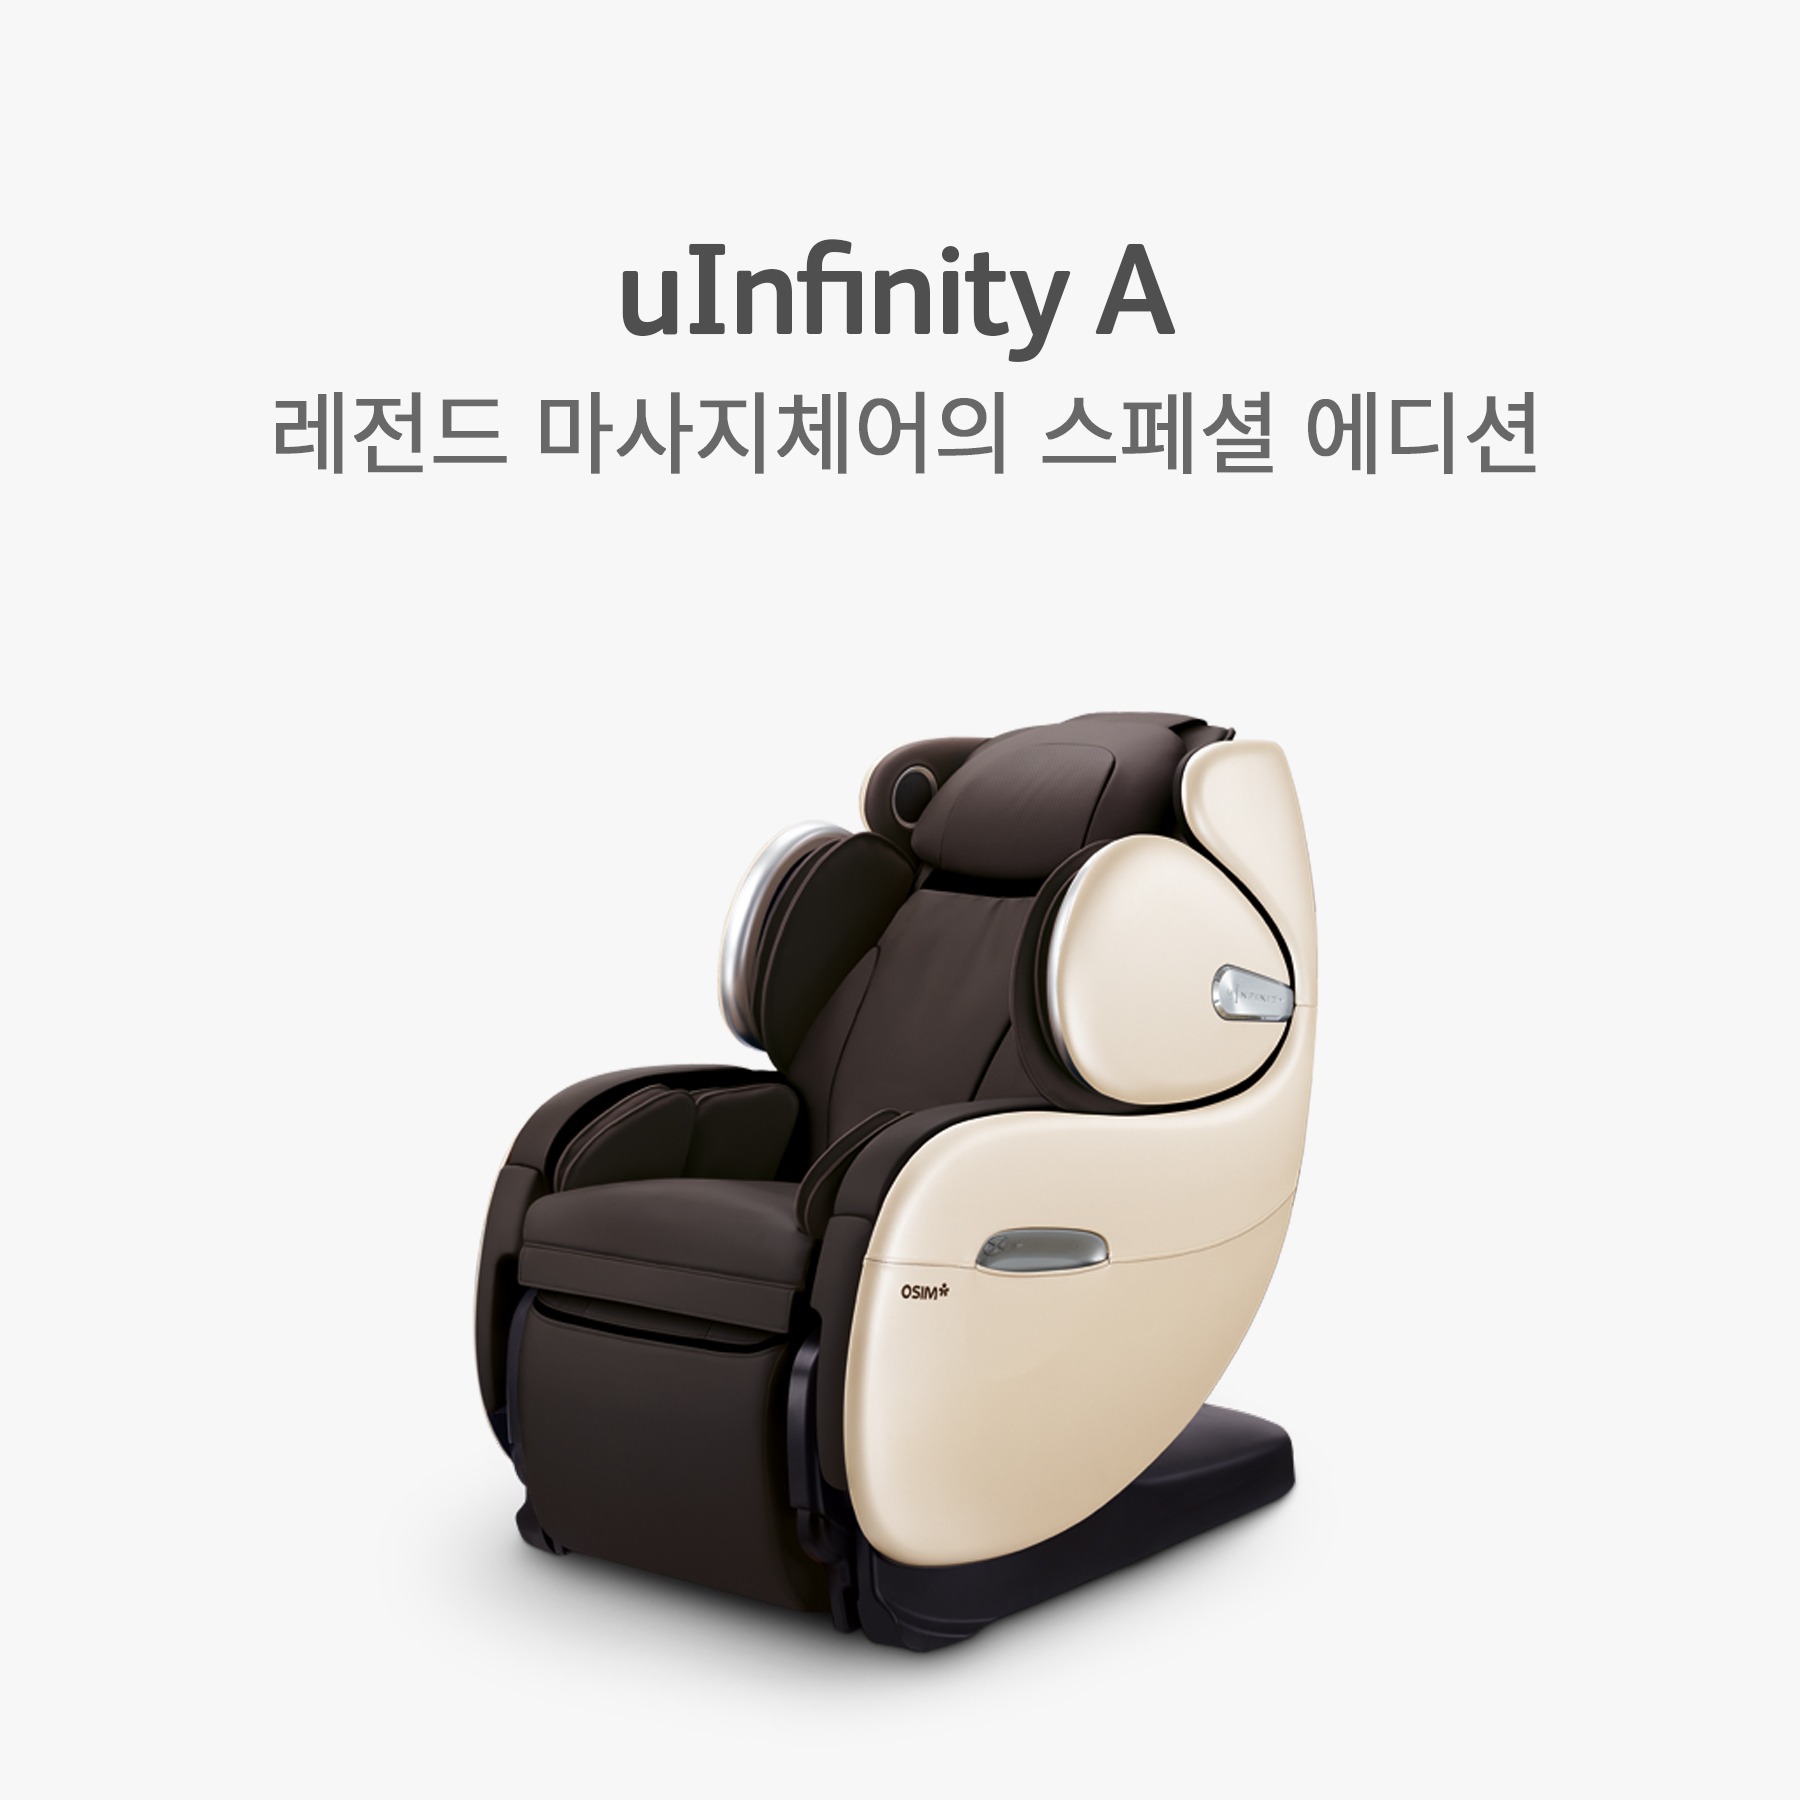 유인피니티 A (uInfinity A, OS-838A)